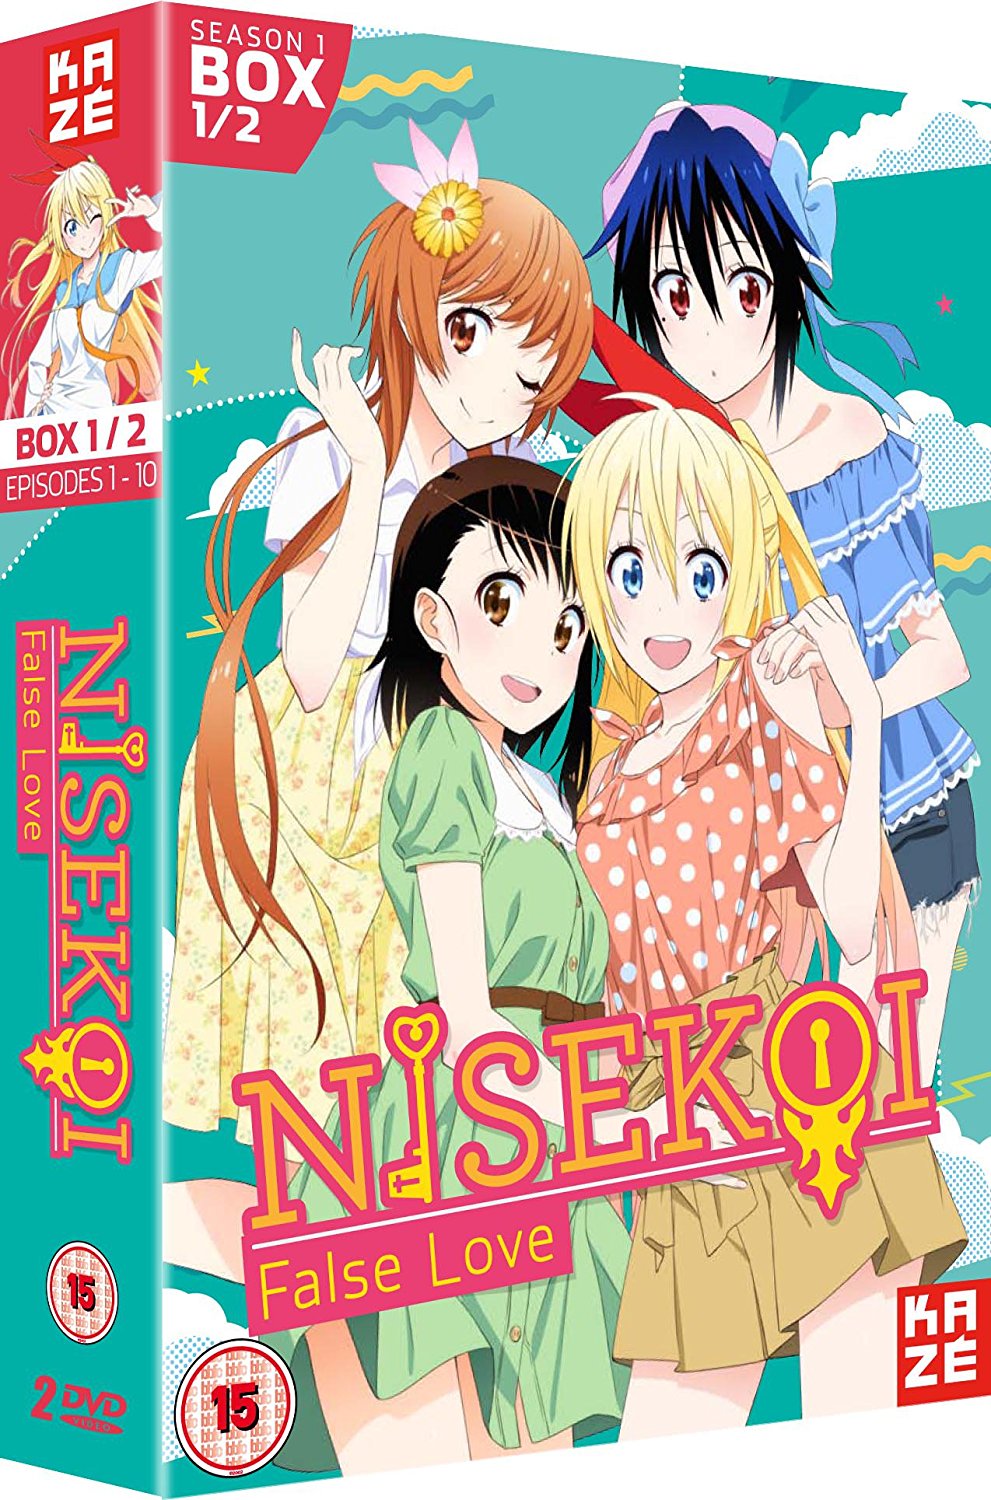 Nisekoi: False Love Season 1 - Part 1 (Episodes 1-10) (DVD)